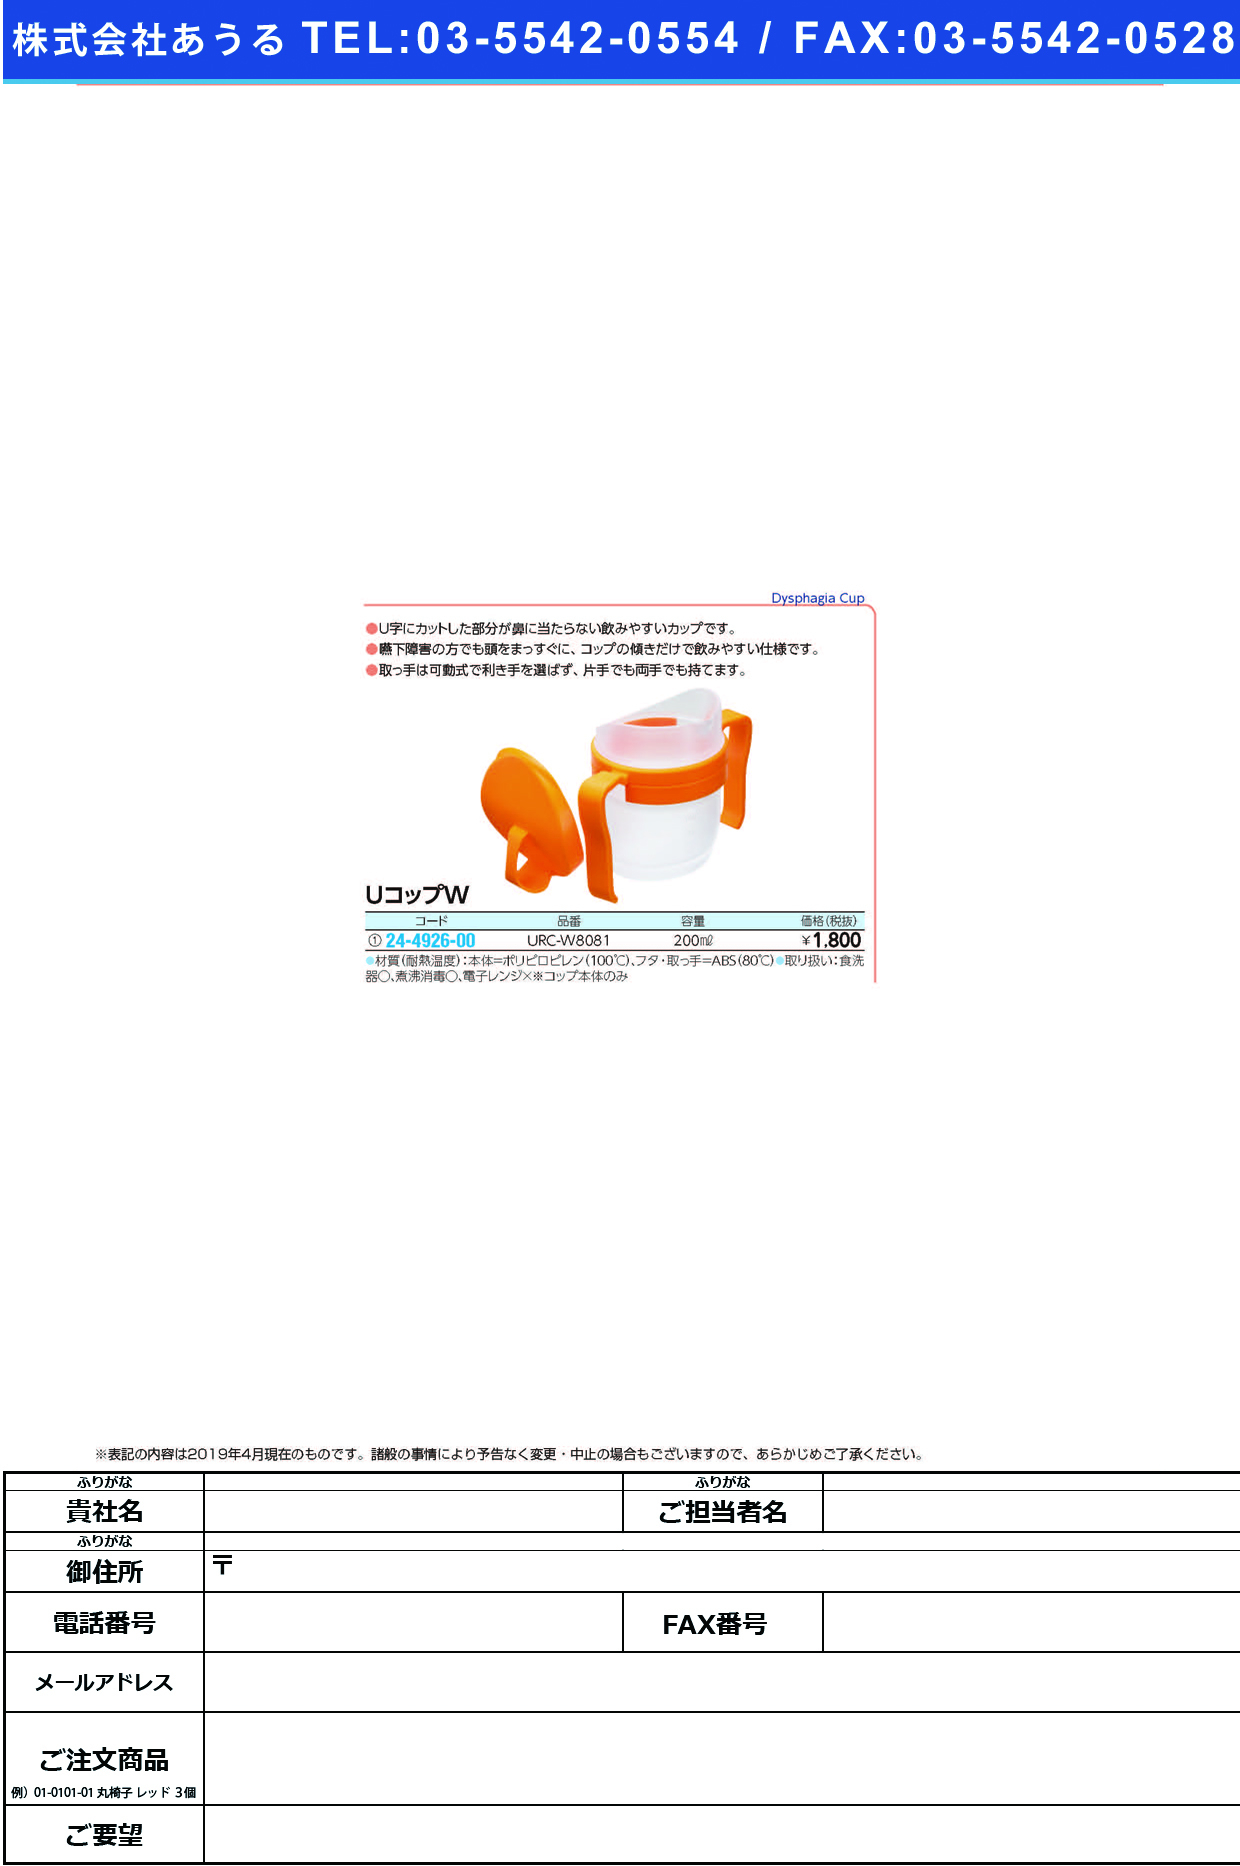 (24-4926-00)ＵコップＷ URC-W8081(200ML) UｺｯﾌﾟW【1個単位】【2019年カタログ商品】